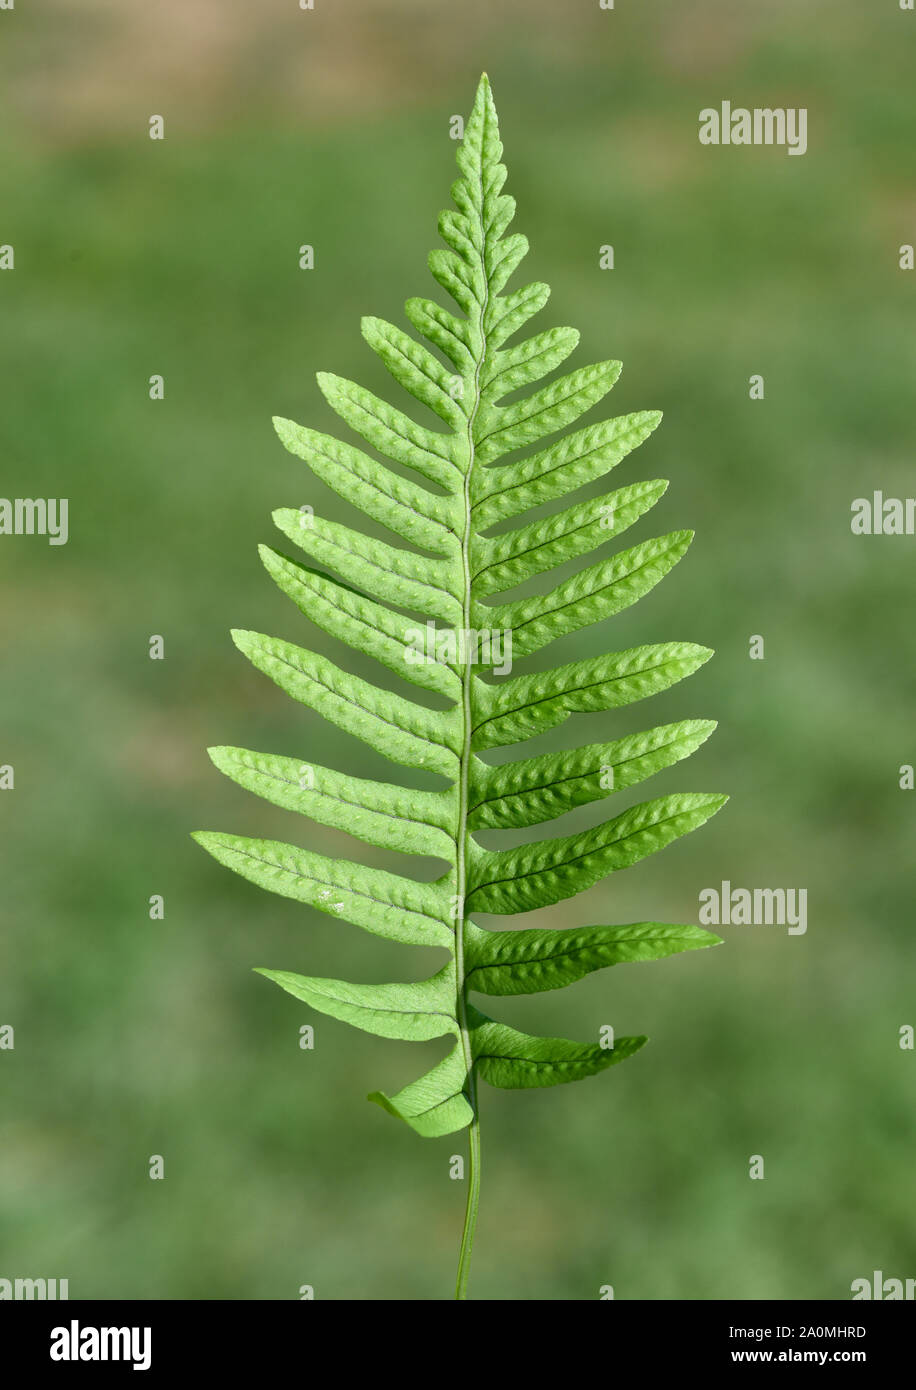 Tuepfelfarn, Polypodium vulgare, ist eine Wild- und Waldpflanze. Meadow fern, Polypodium vulgare, is a wild and forest plant. Stock Photo